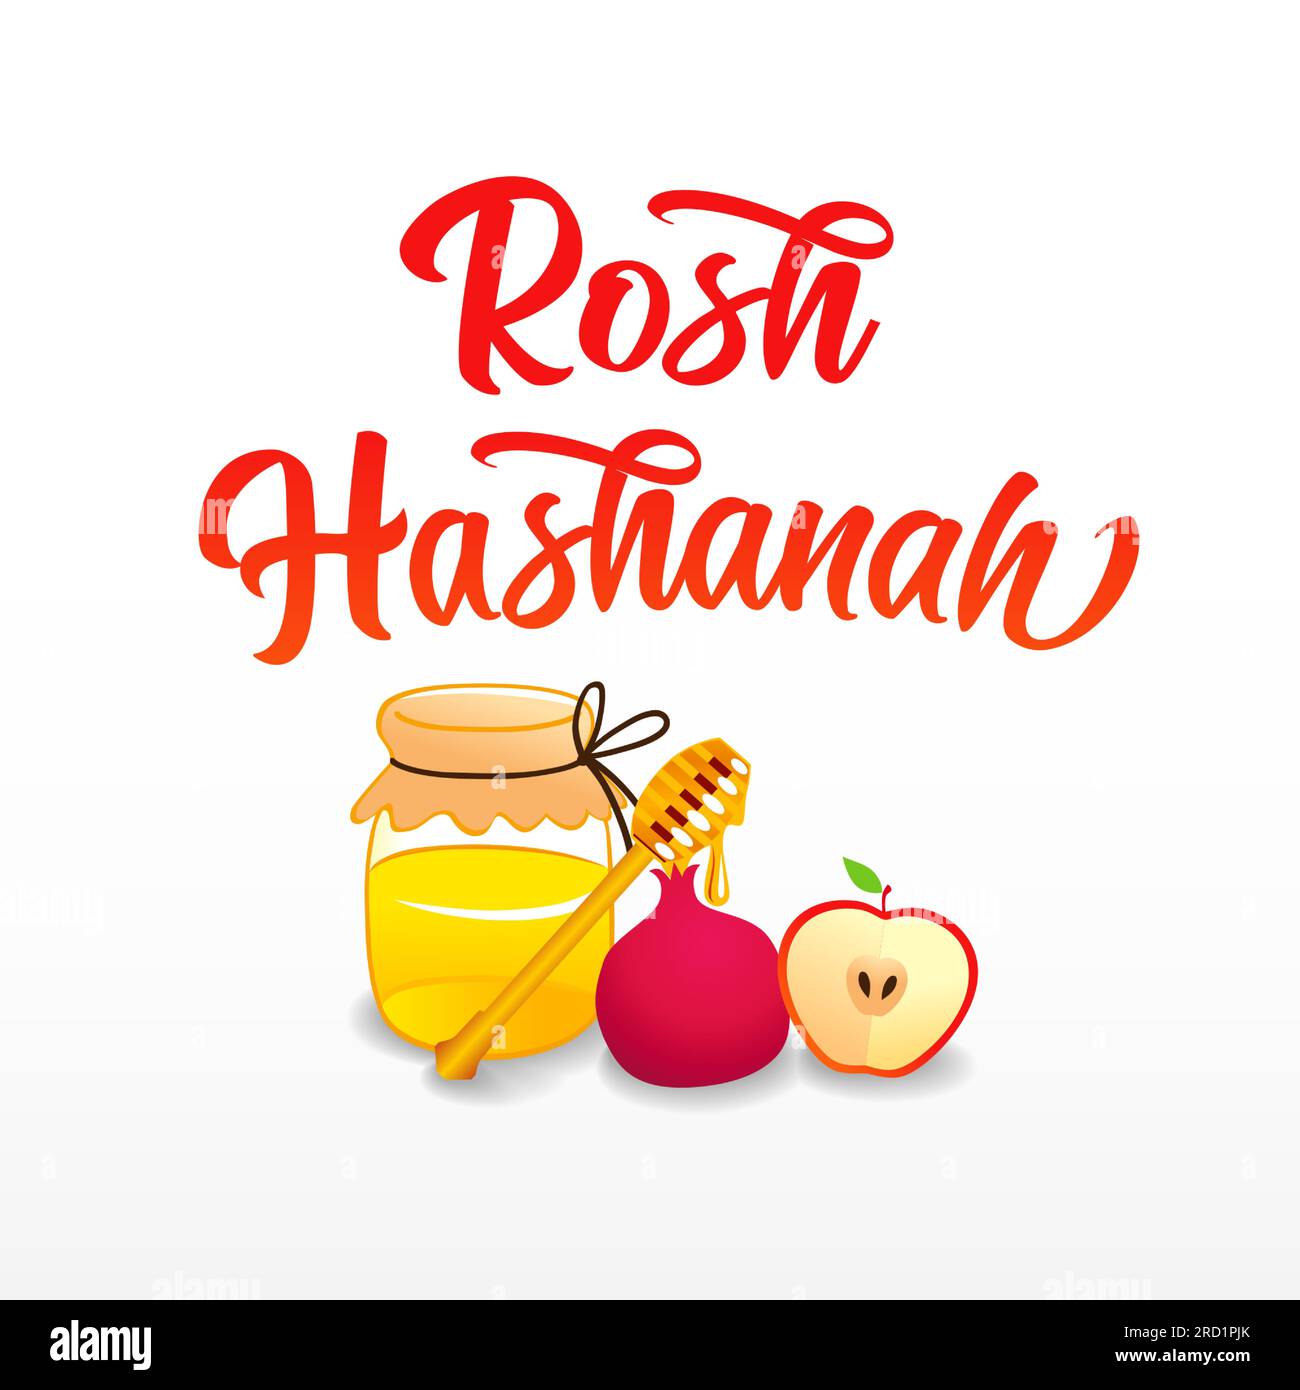 Scritta Rosh Hashanah, banner natalizio con miele, melograno e mela. Illustrazione vettoriale dei simboli tradizionali Shana Tova Illustrazione Vettoriale